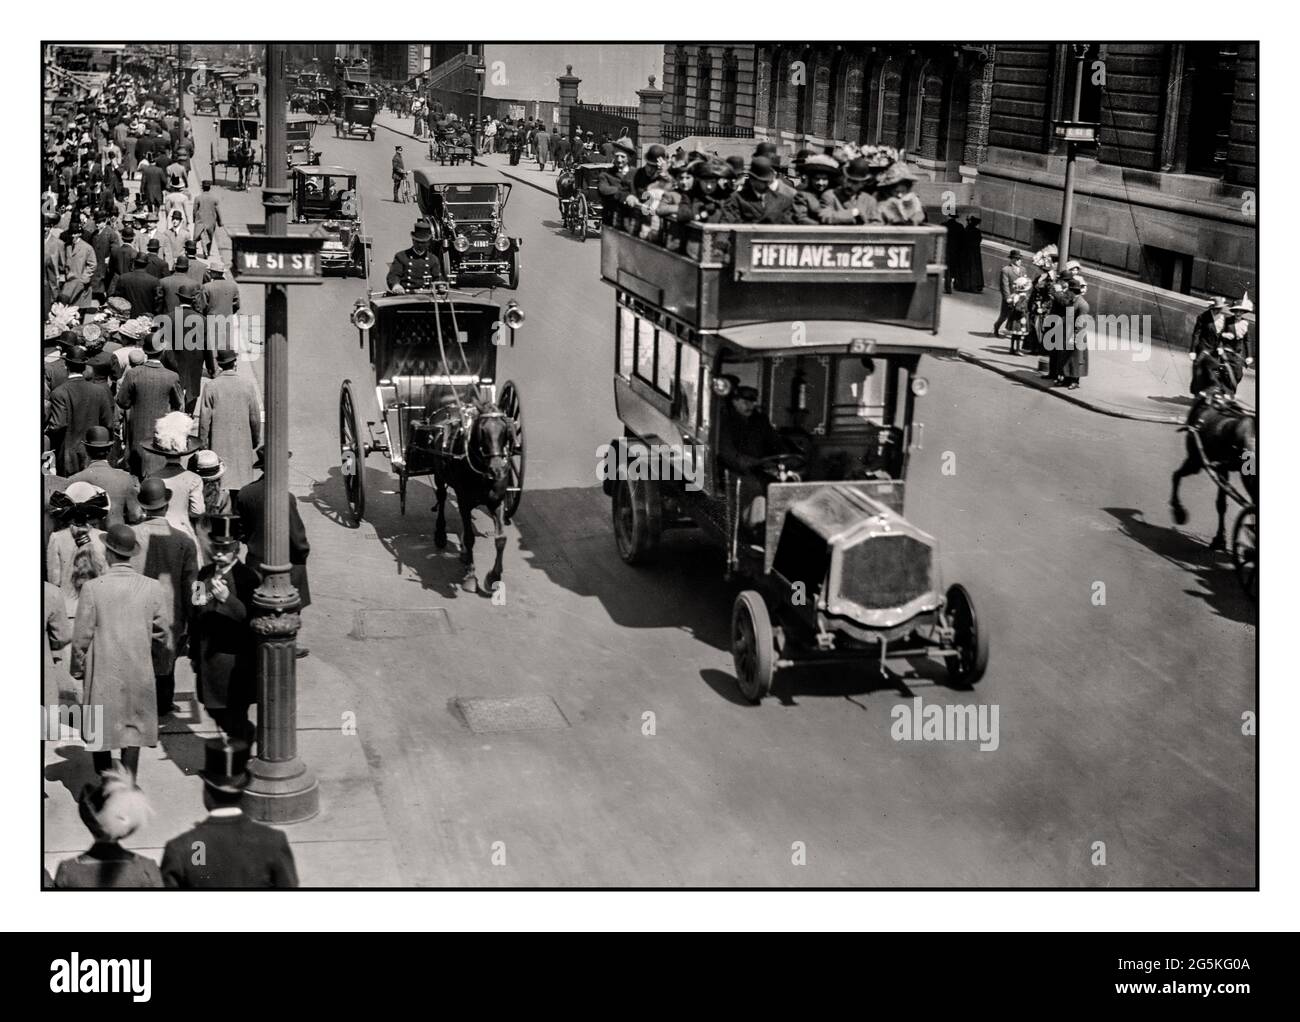 L'archivio della 5th Avenue del 1870 di New York trasporta l'immagine storica dei veicoli trainati da cavalli e motorizzati che includono un autobus auto, sulla 5th Avenue con folle eleganti e ben vestite che camminano sul marciapiede di New York Manhattan USA America Foto Stock